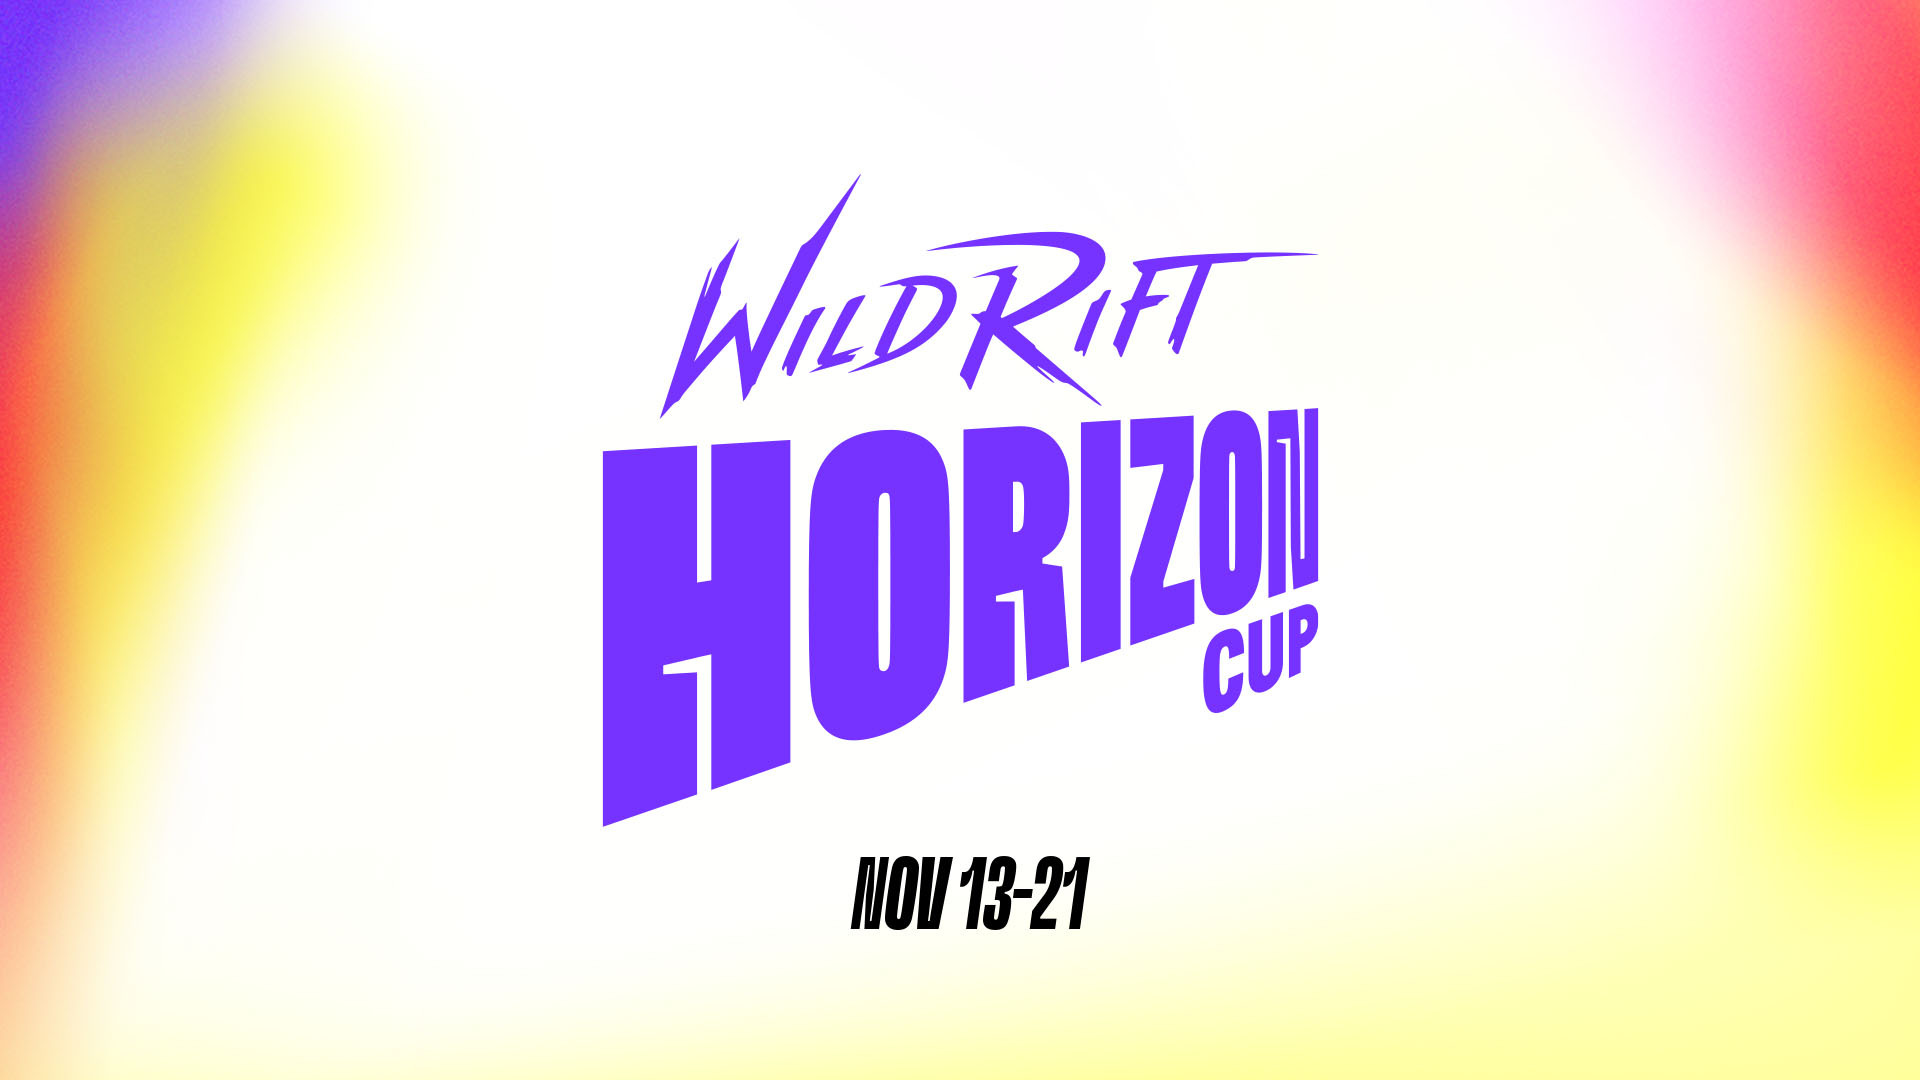 Wild Rift Horizon Cup 対戦スケジュール